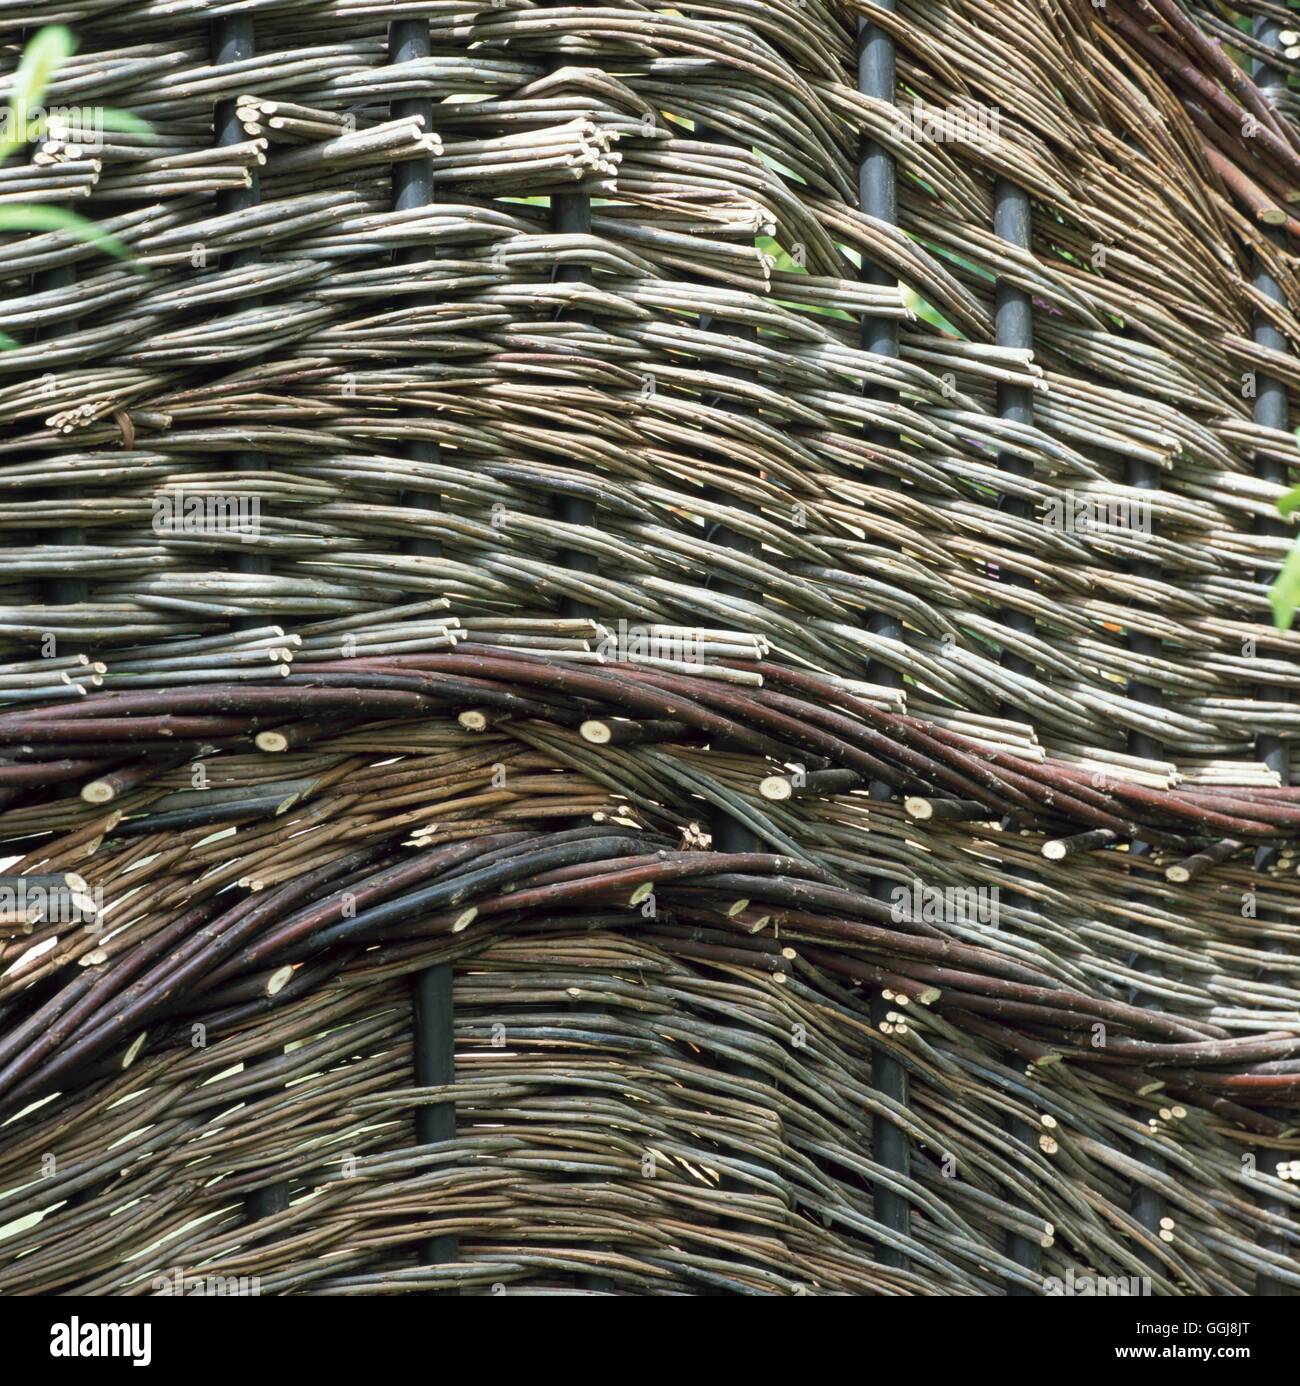 Zaun - Woven Willow Panel FEN102626 Stockfoto